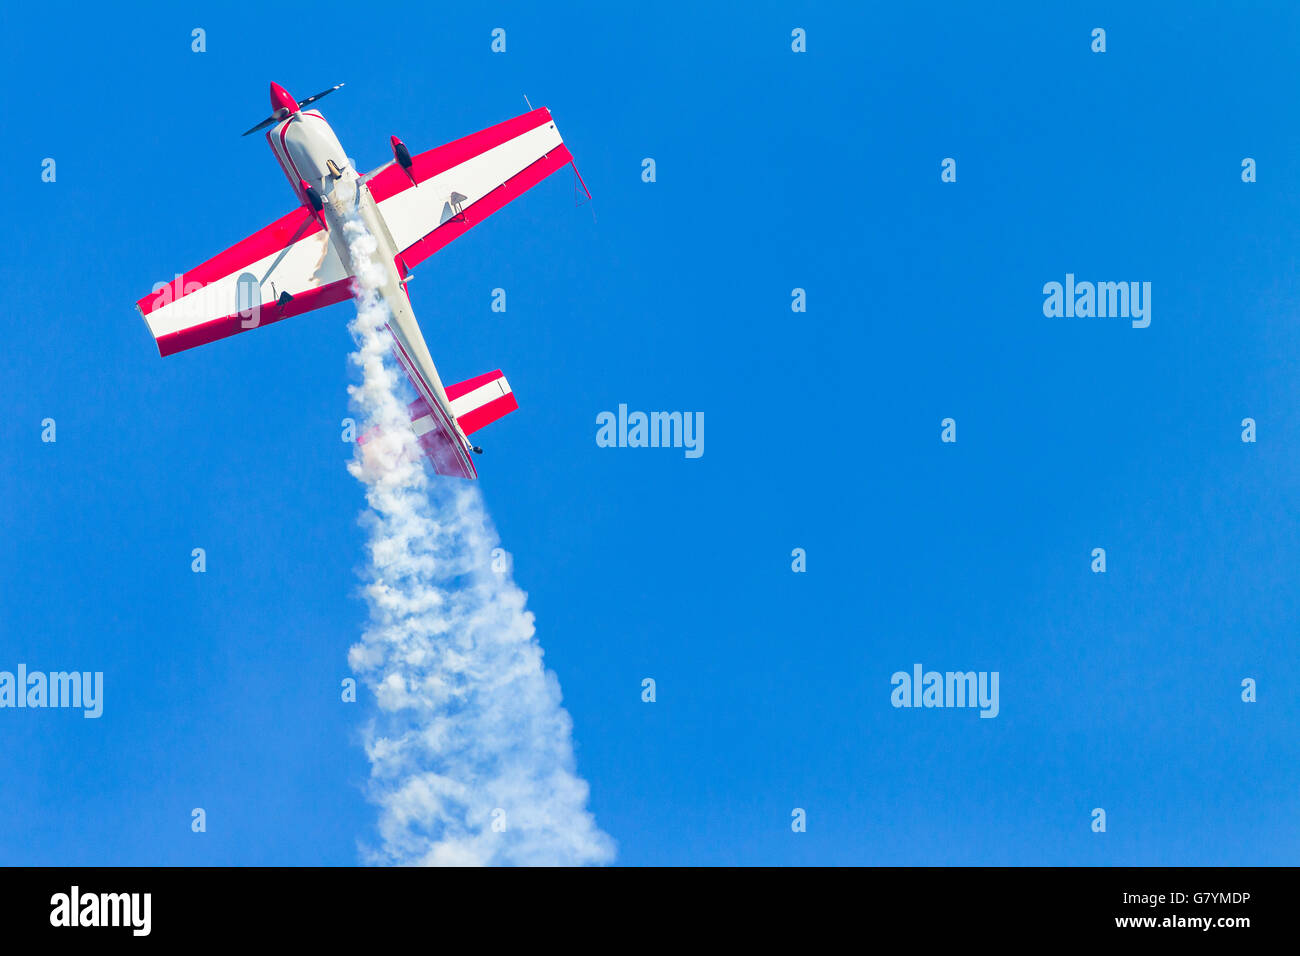 Luftfahrzeugführer Akrobatik Flugzeug fliegen Aktion im blauen Himmel Closeup Stände Rollen und Tauchgänge. Stockfoto